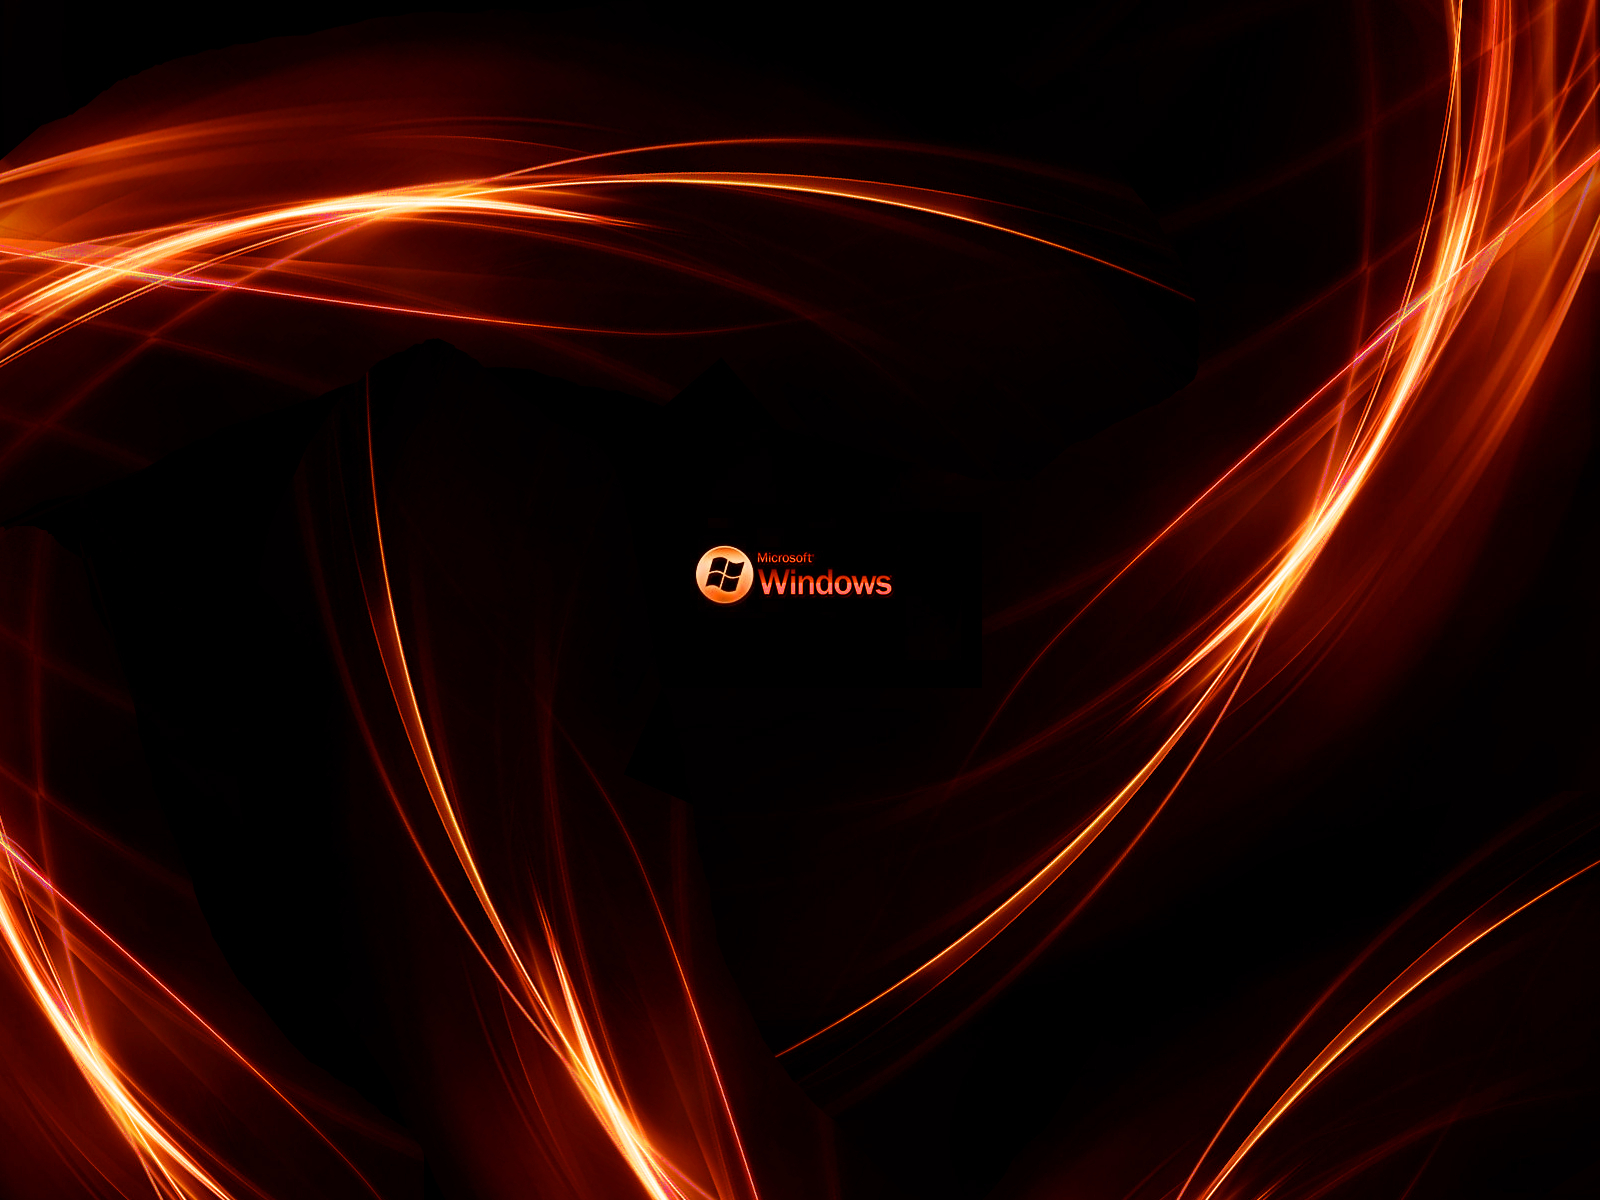 Black and Orange Desktop Wallpaper | PixelsTalk.Net